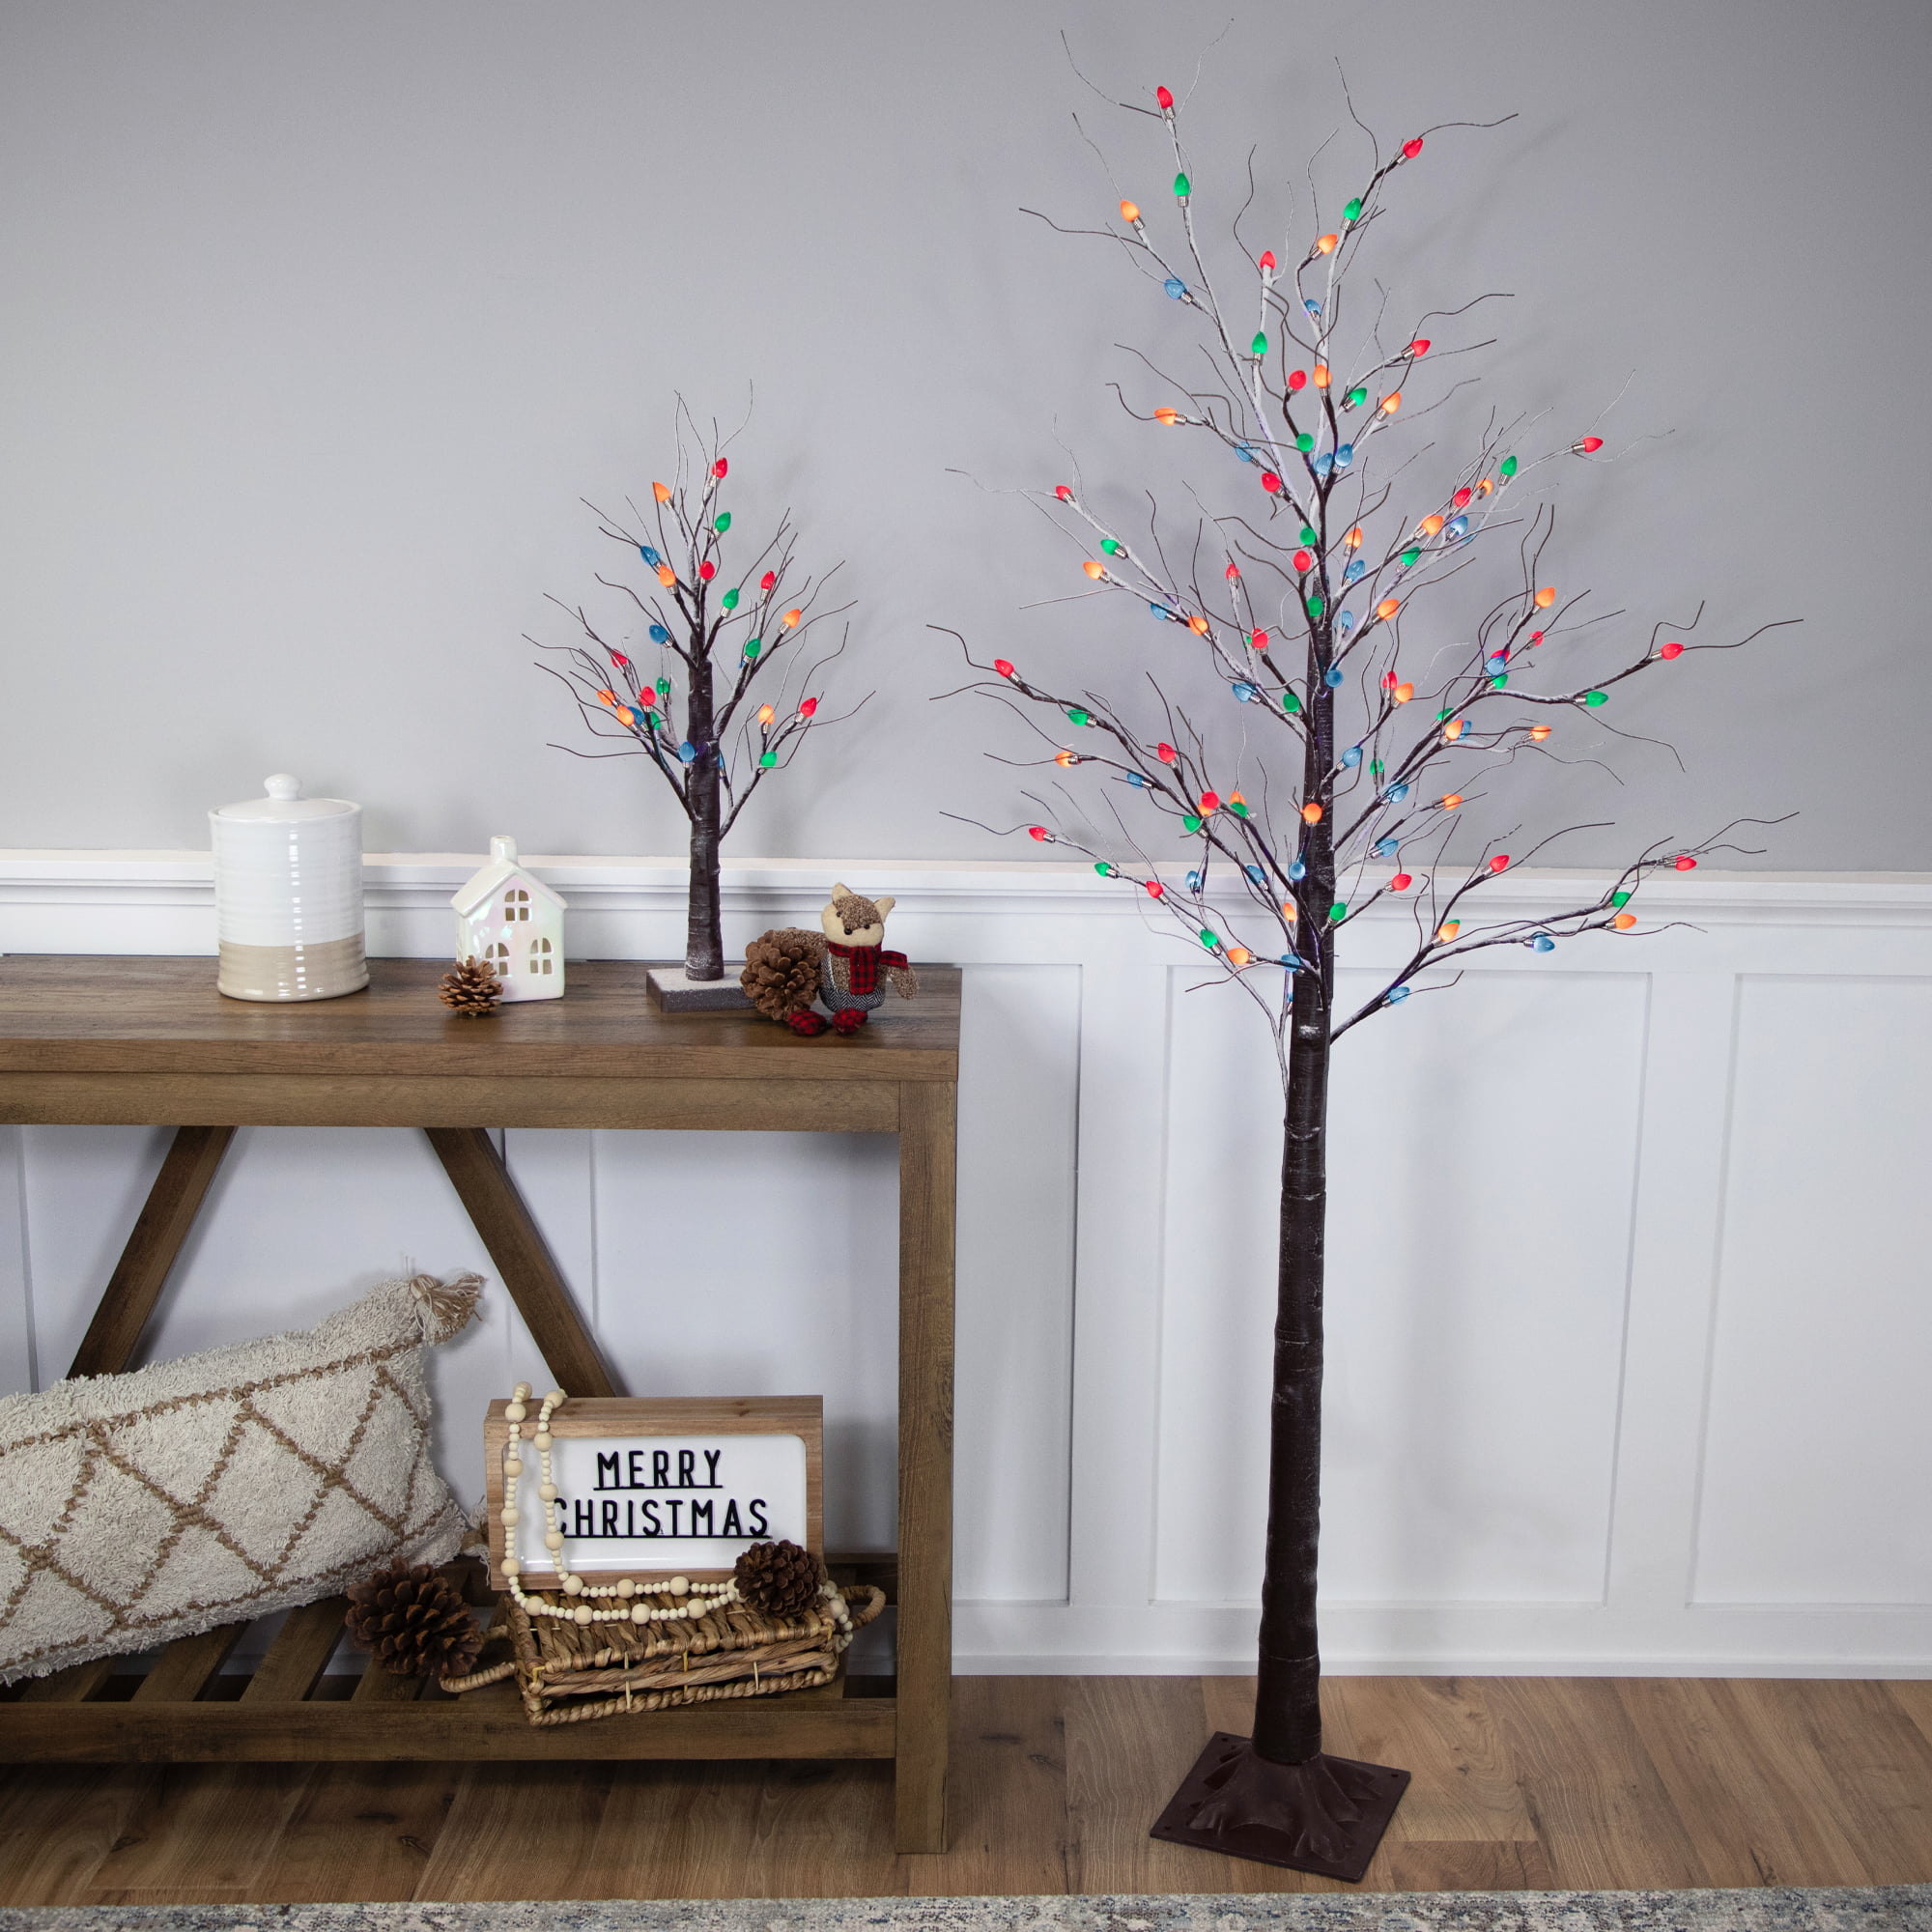 DIY Twig Christmas Tree with Lights USB Plug – The DIY Outlet